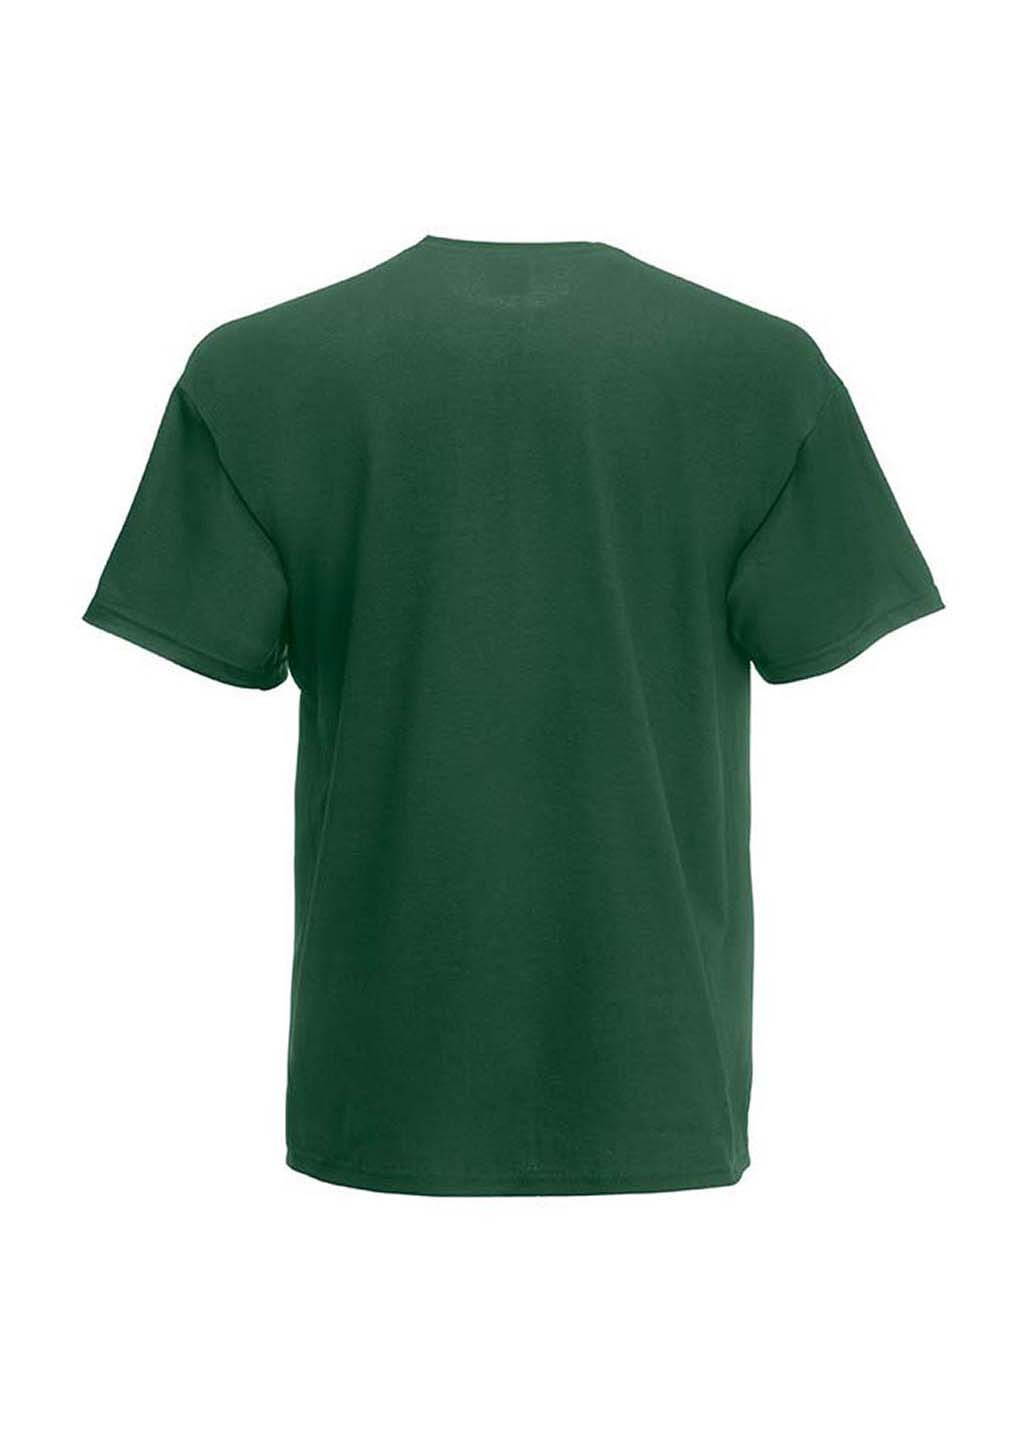 Темно-зеленая демисезонная футболка Fruit of the Loom 61033038164